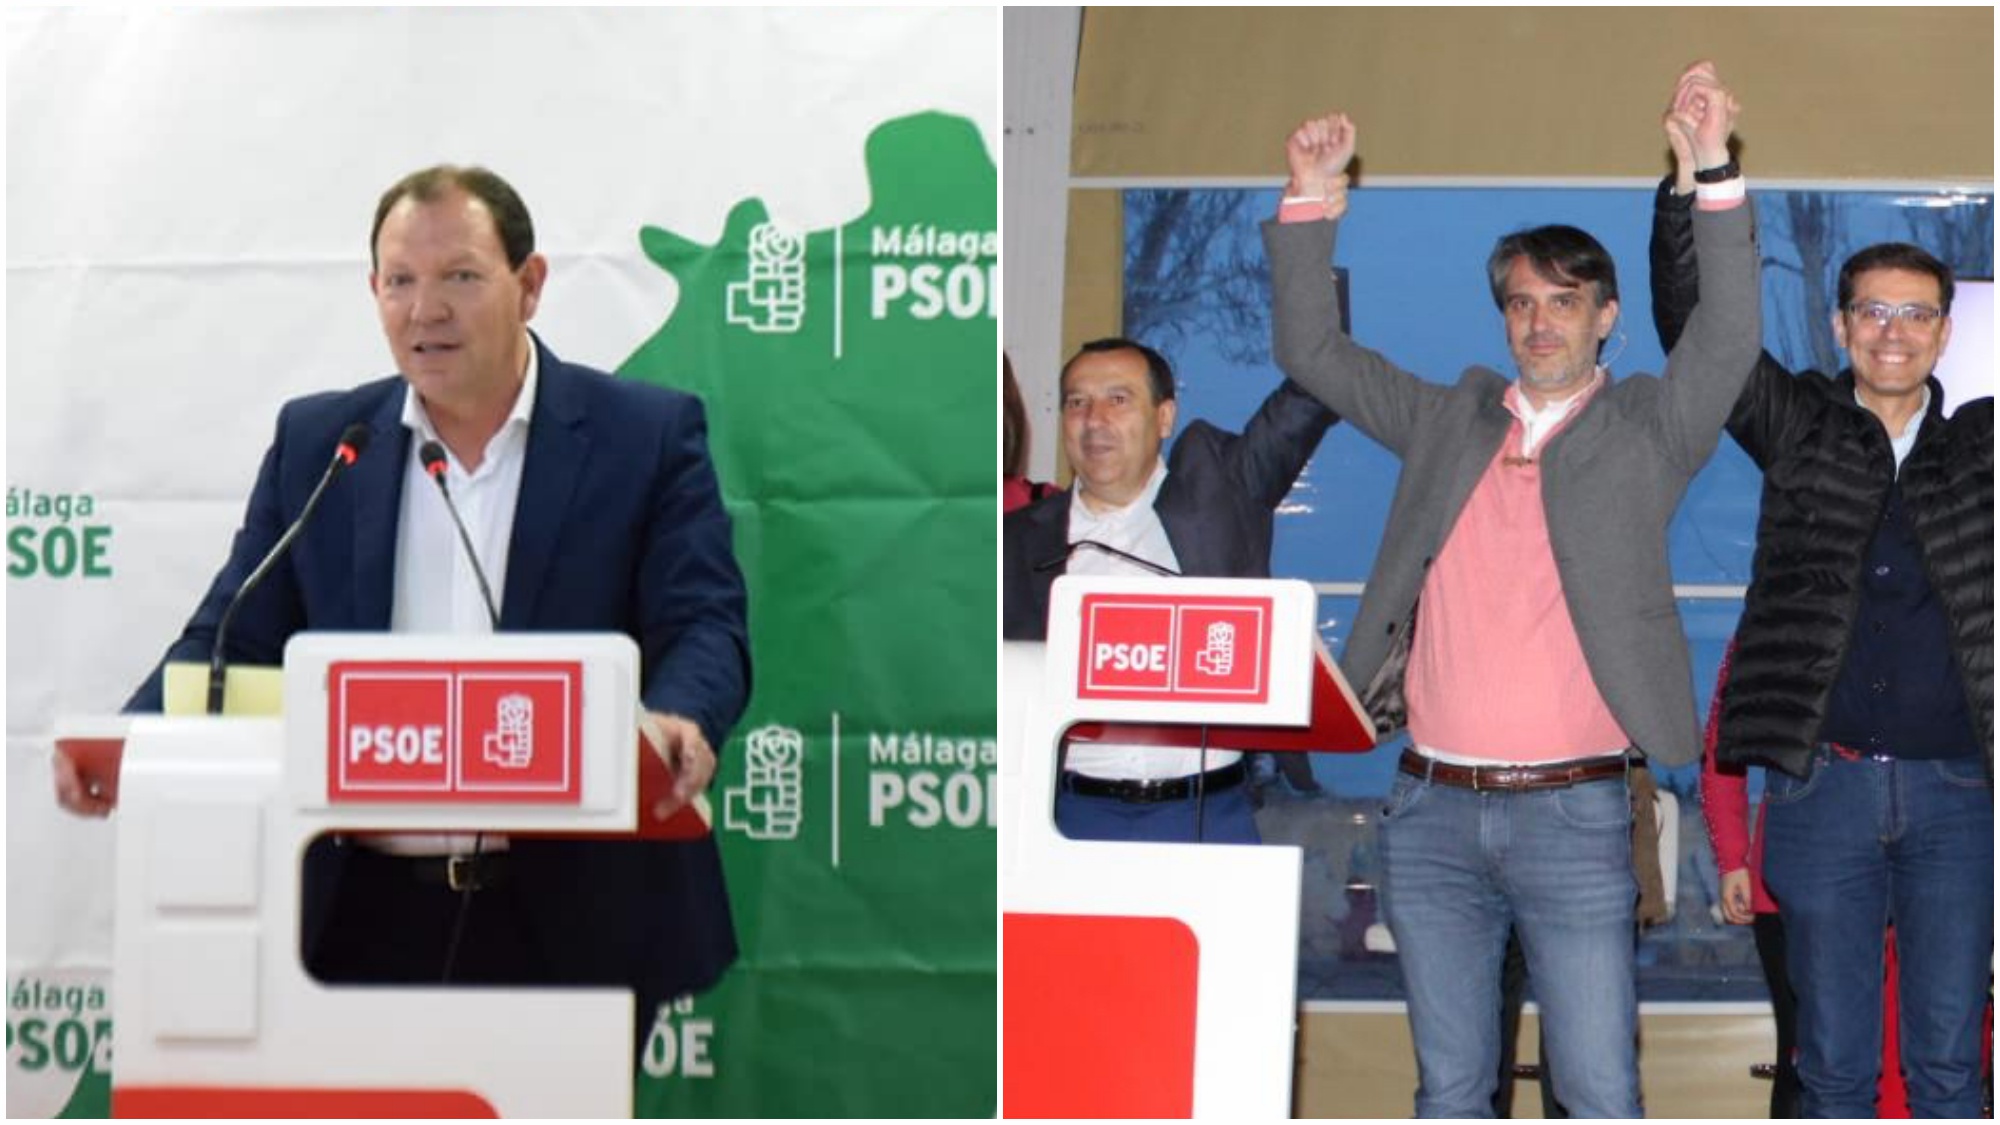 Miguel Asencio y Eugenio Sevillano candidatos PSOE Muncipales